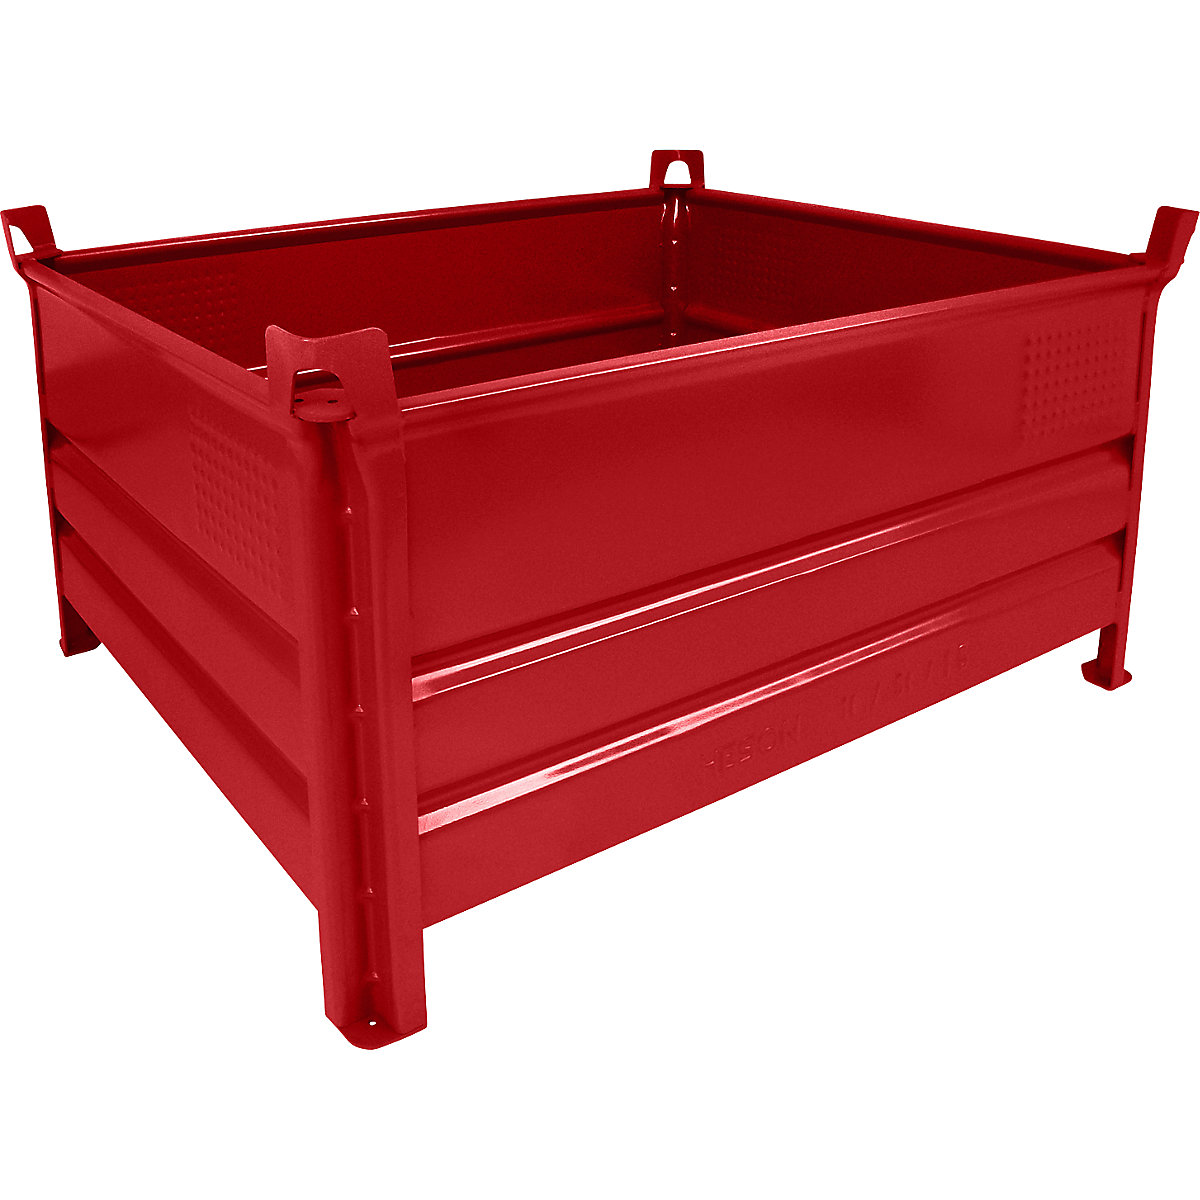 Pojemnik do ustawiania w stos z pełnymi ściankami – Heson, szer. x dł. 1000 x 1200 mm, nośność 2000 kg, czerwony, od 10 szt.-6